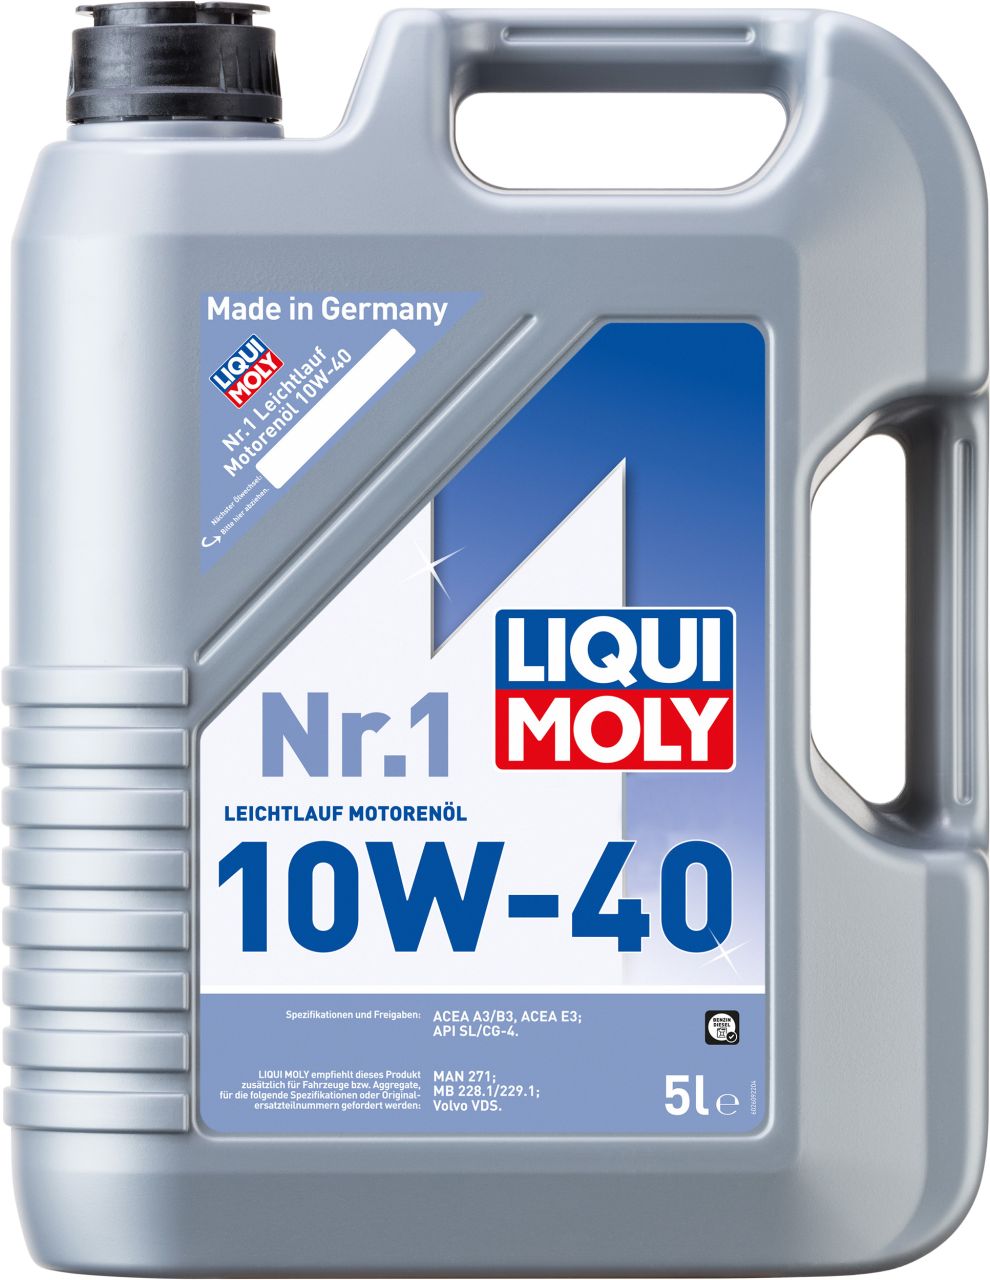 Liqui Moly Motoröl Nr. 1 Leichtlauf 10W-40 5 L